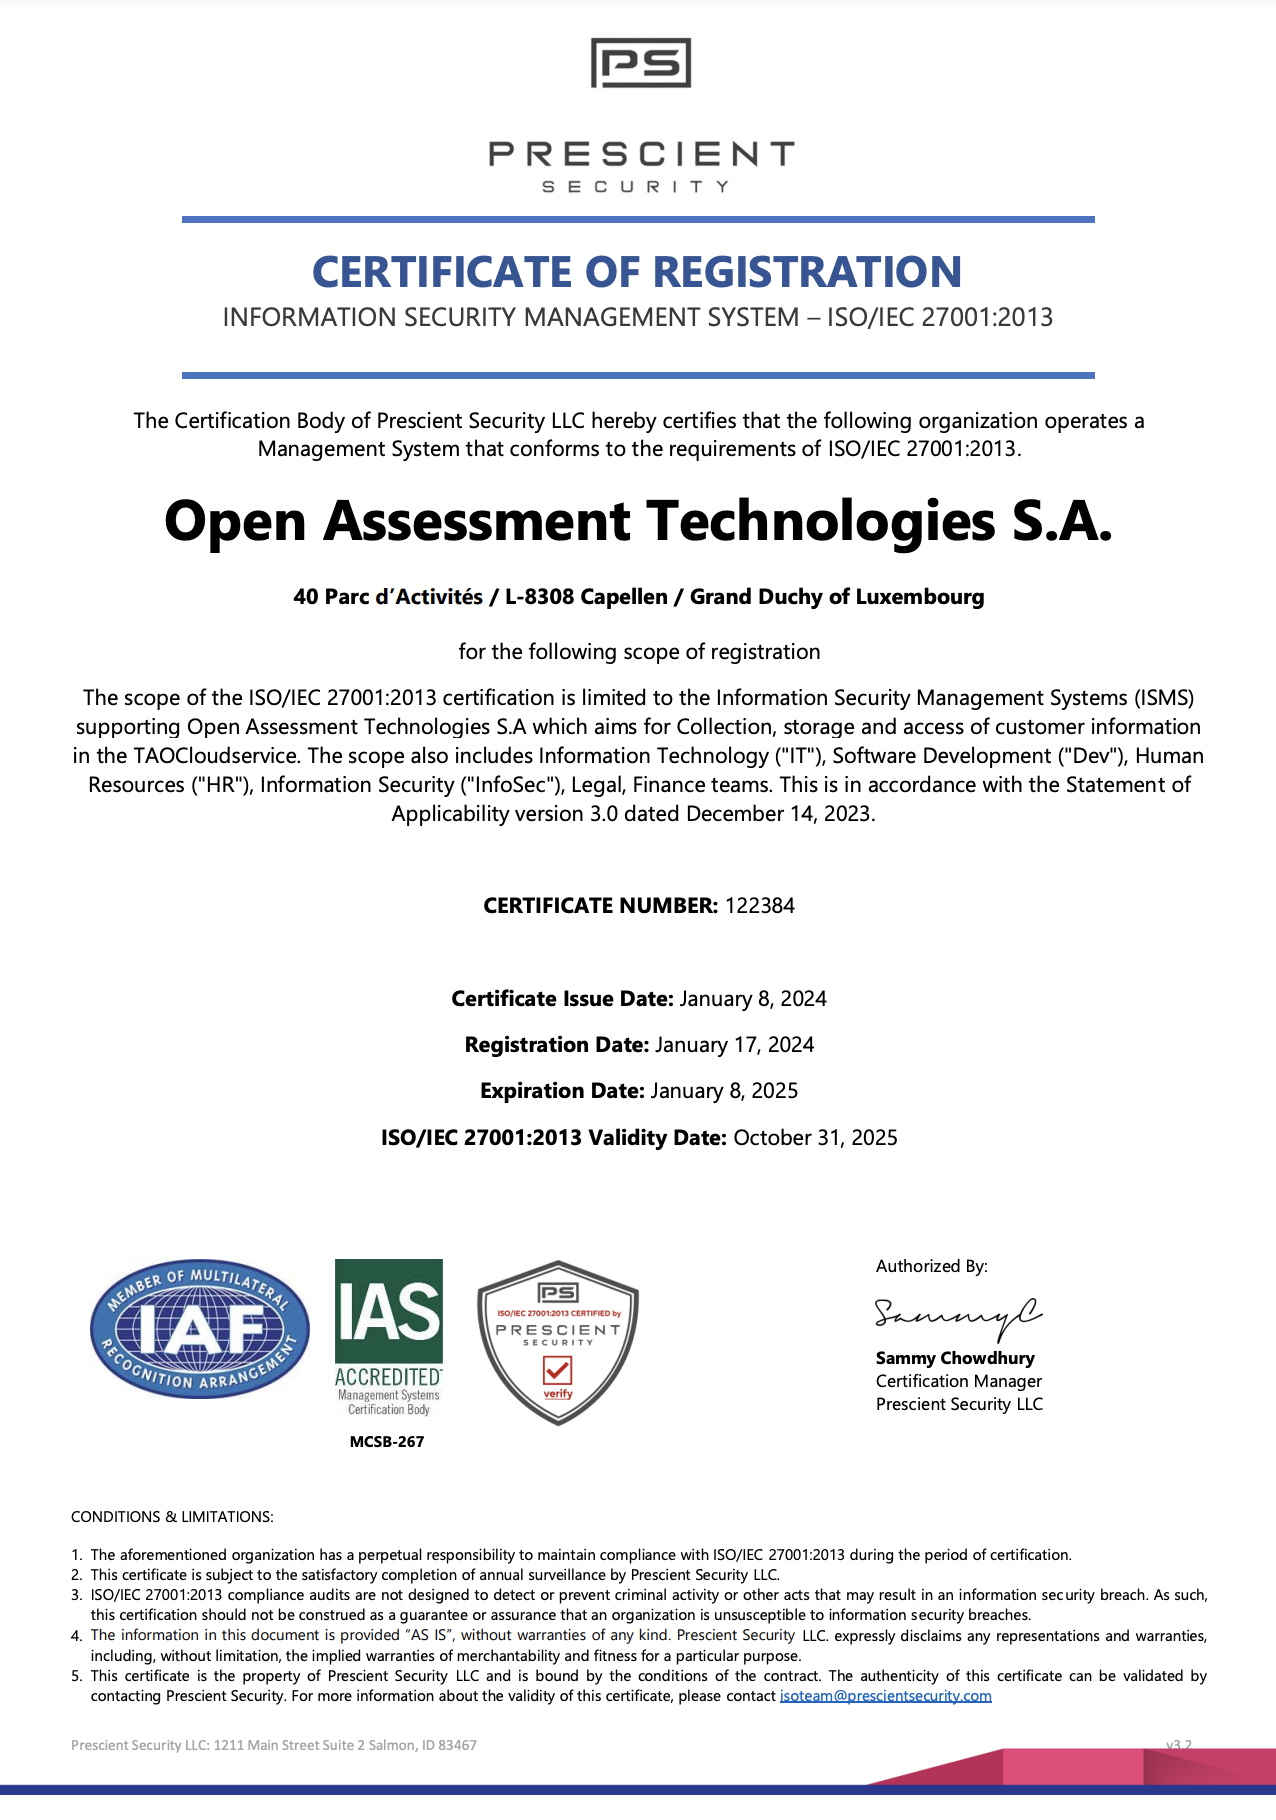 認証機関Prescient Security LLC、IAS、IAS認定によるOATのISO/IEC 27001認証の画像。